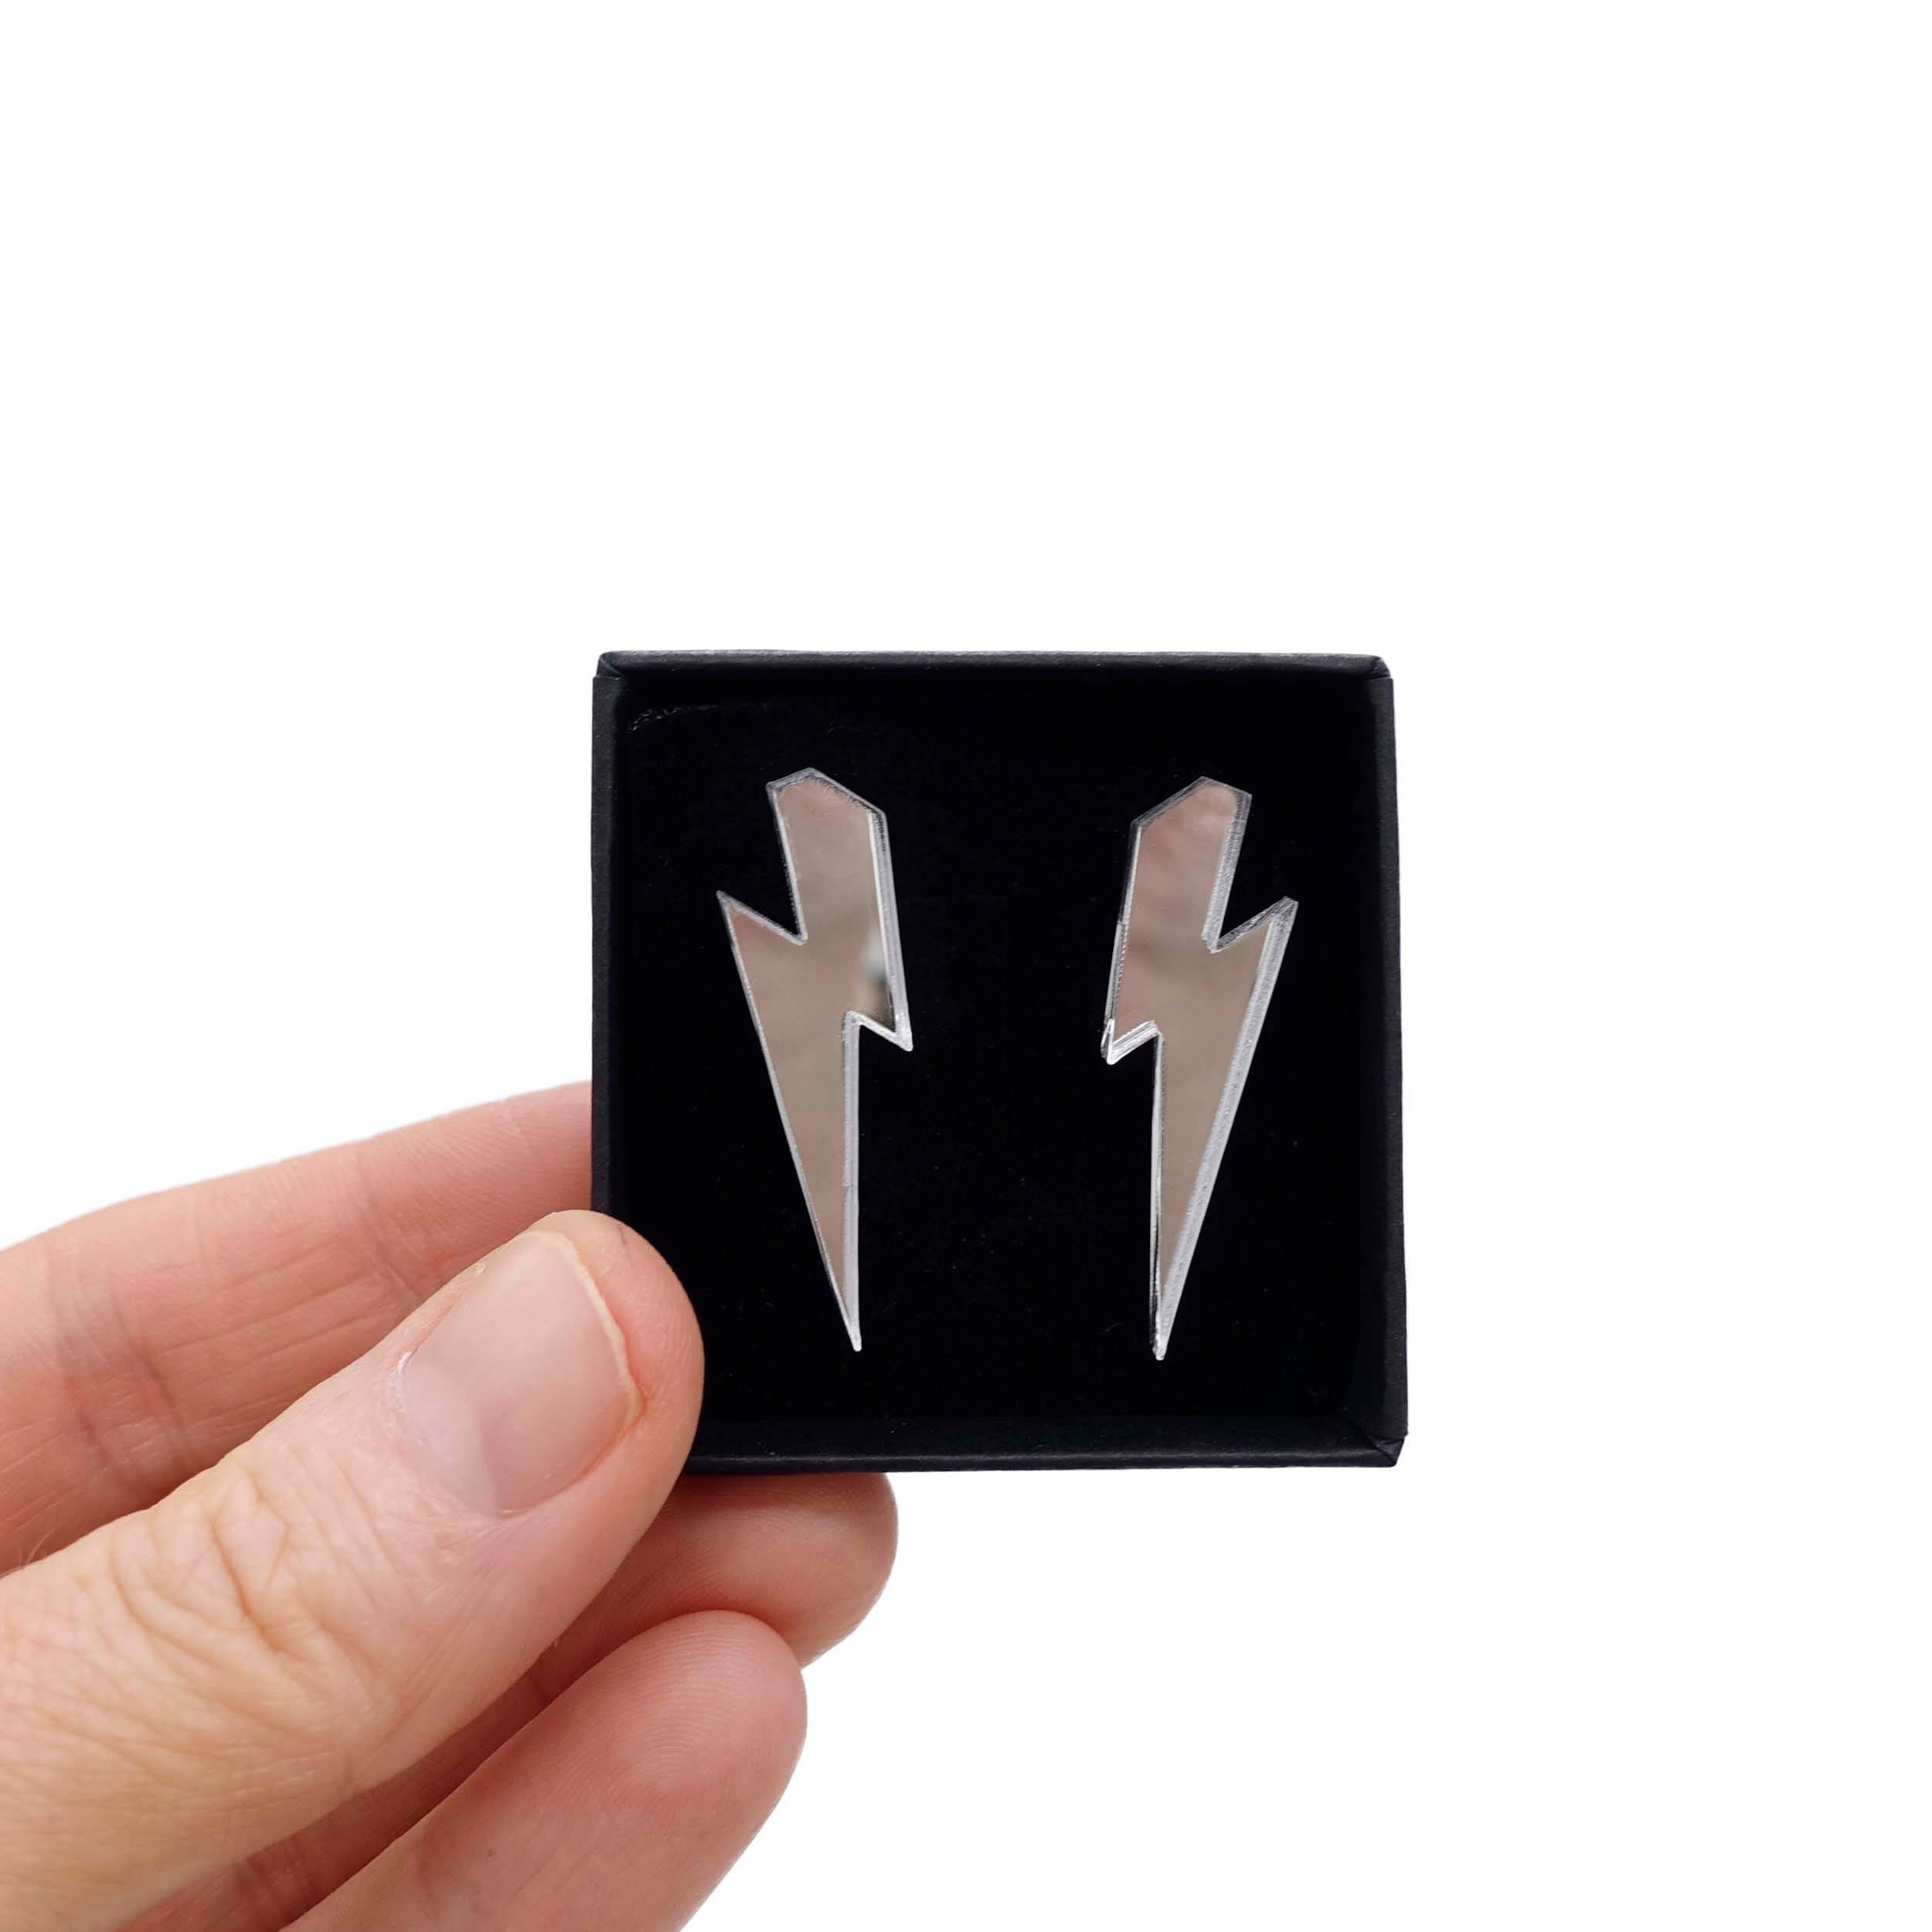 Medium lightning bolt earrings in silver mirror. 